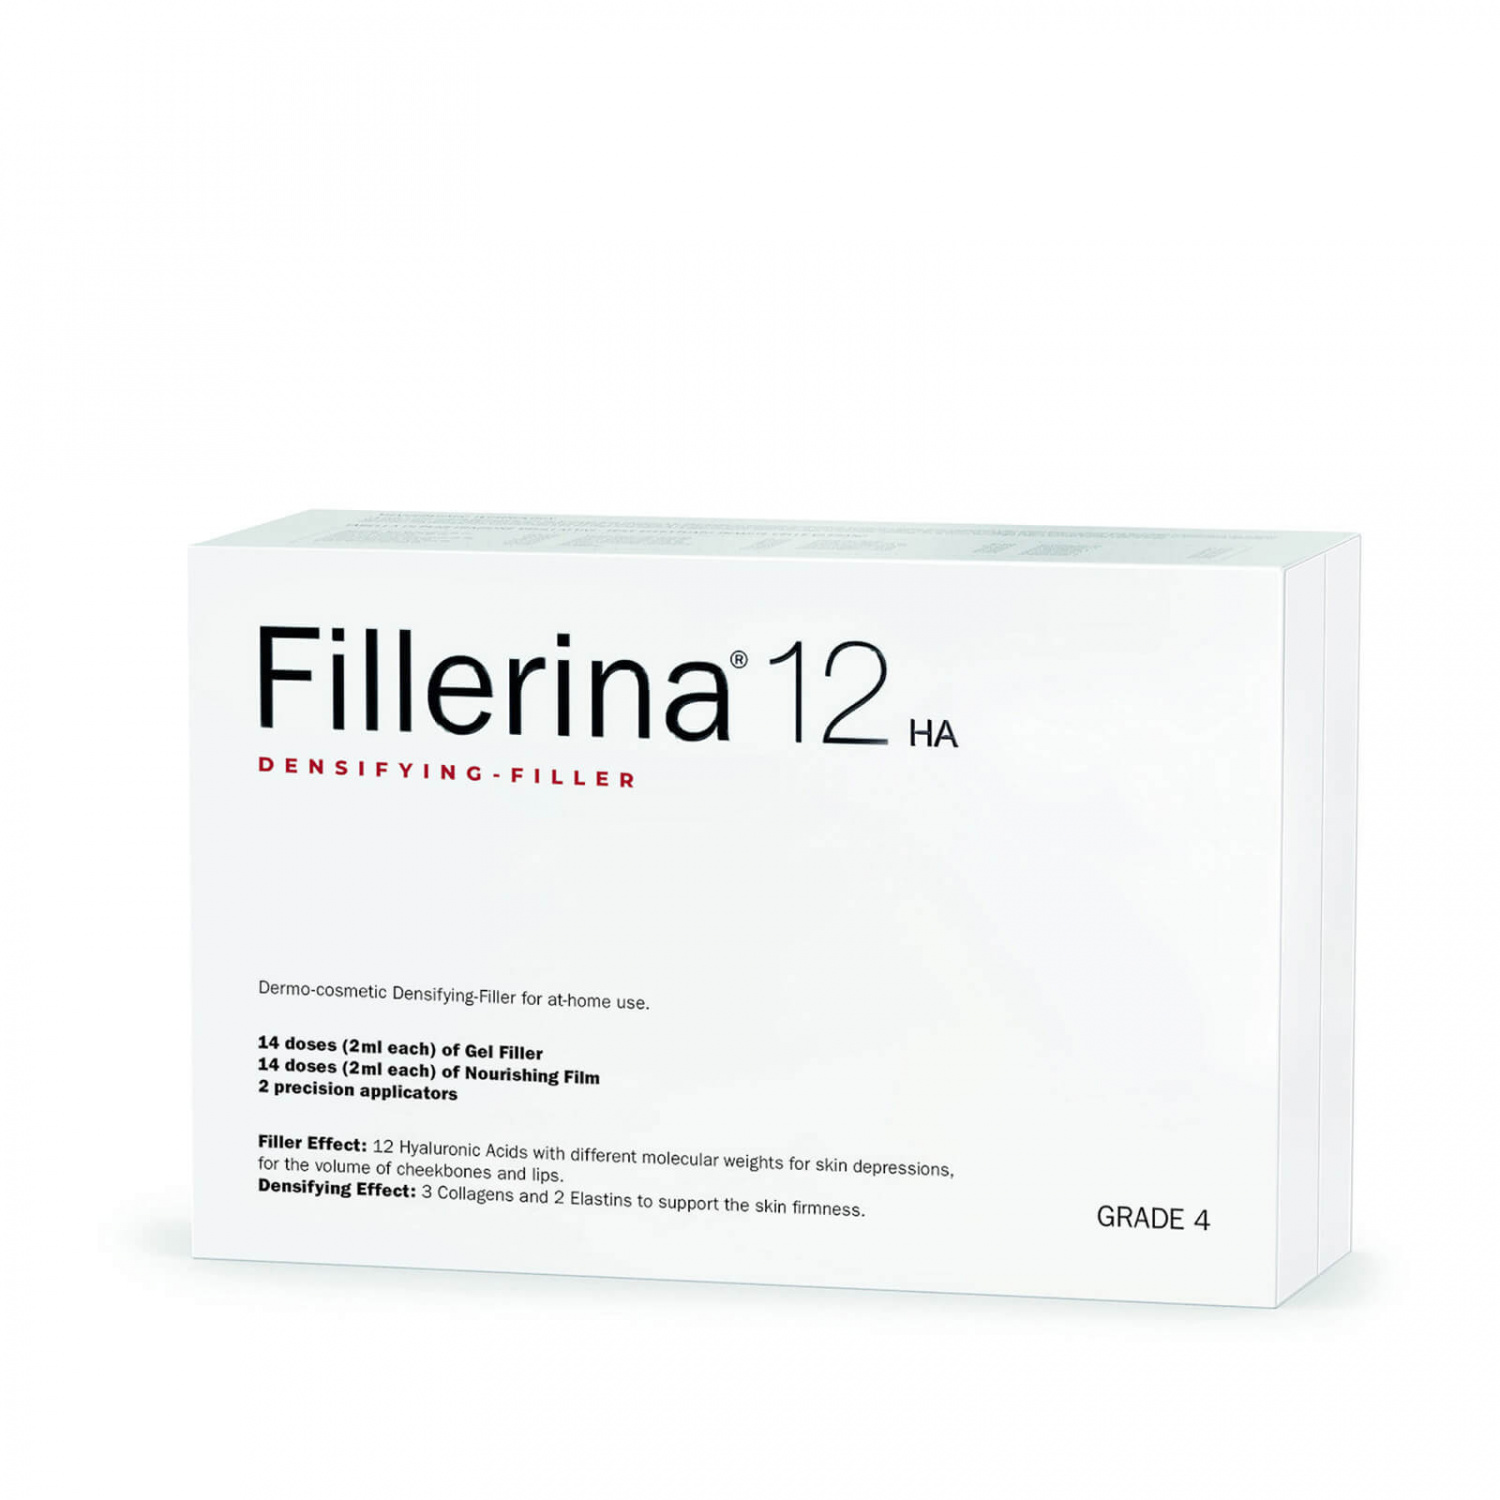 Fillerina 12HA Densifying-Filler Intensive Filler Treatment Grade 3 - интернет-магазин профессиональной косметики Spadream, изображение 37545